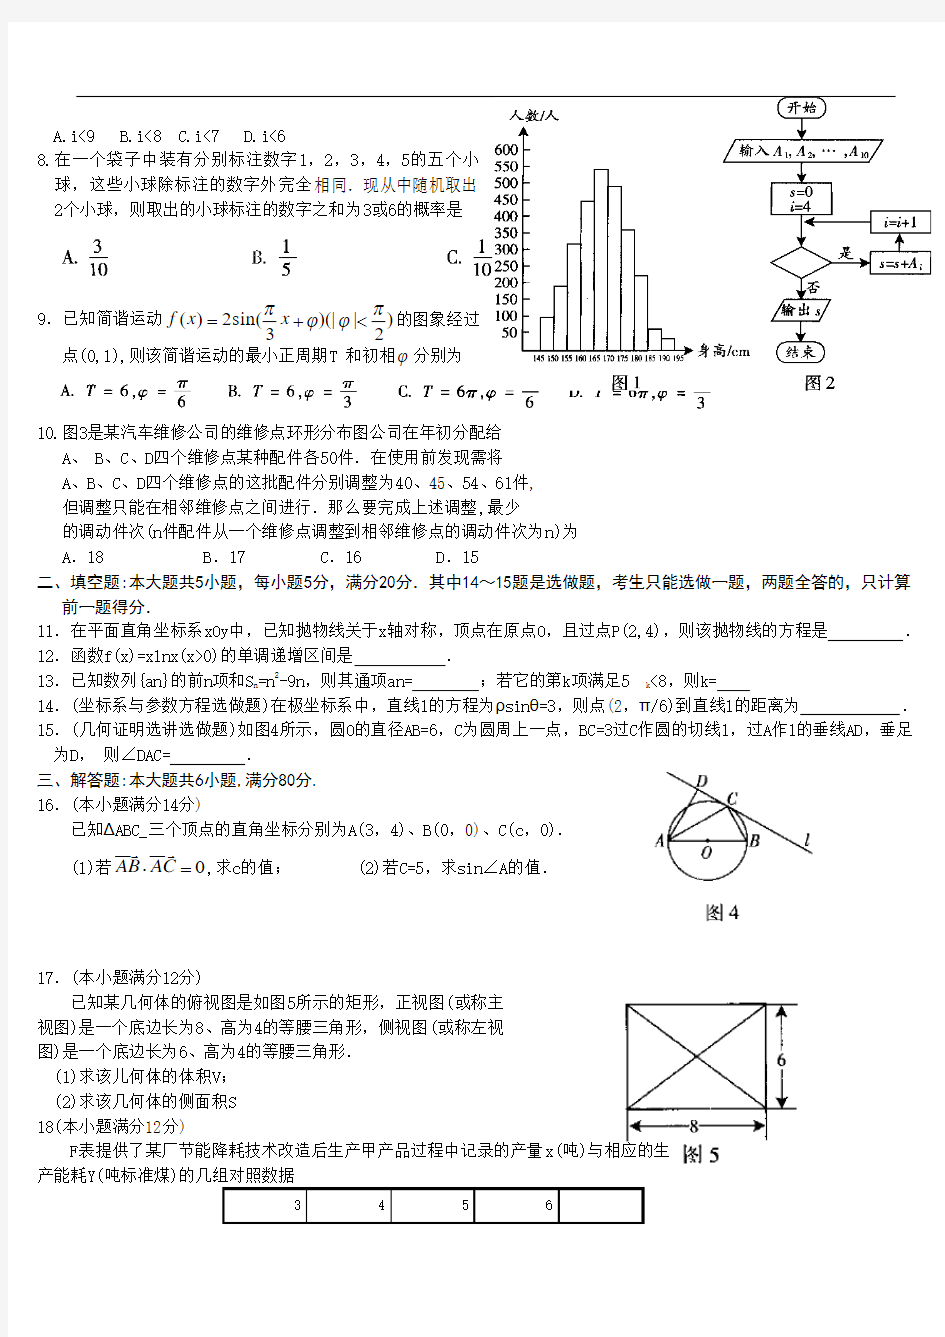 2007年广东高考文科数学试题及答案